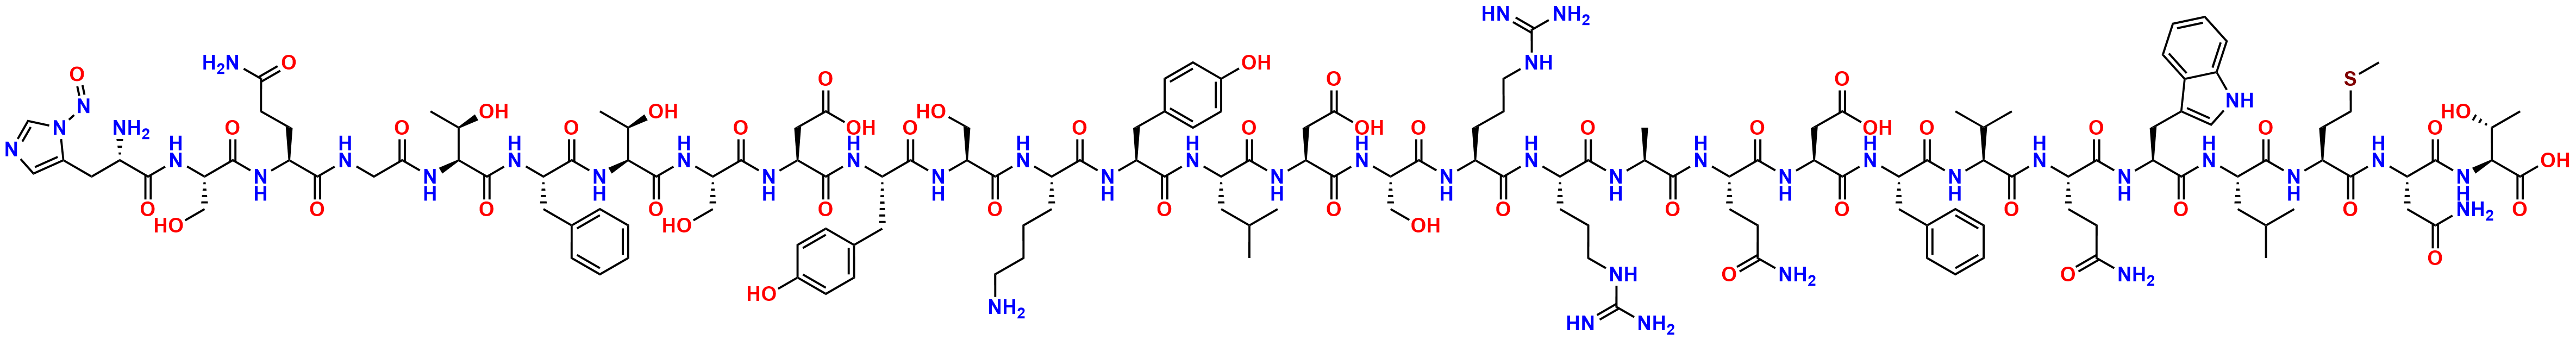 N-Nitroso Glucagon